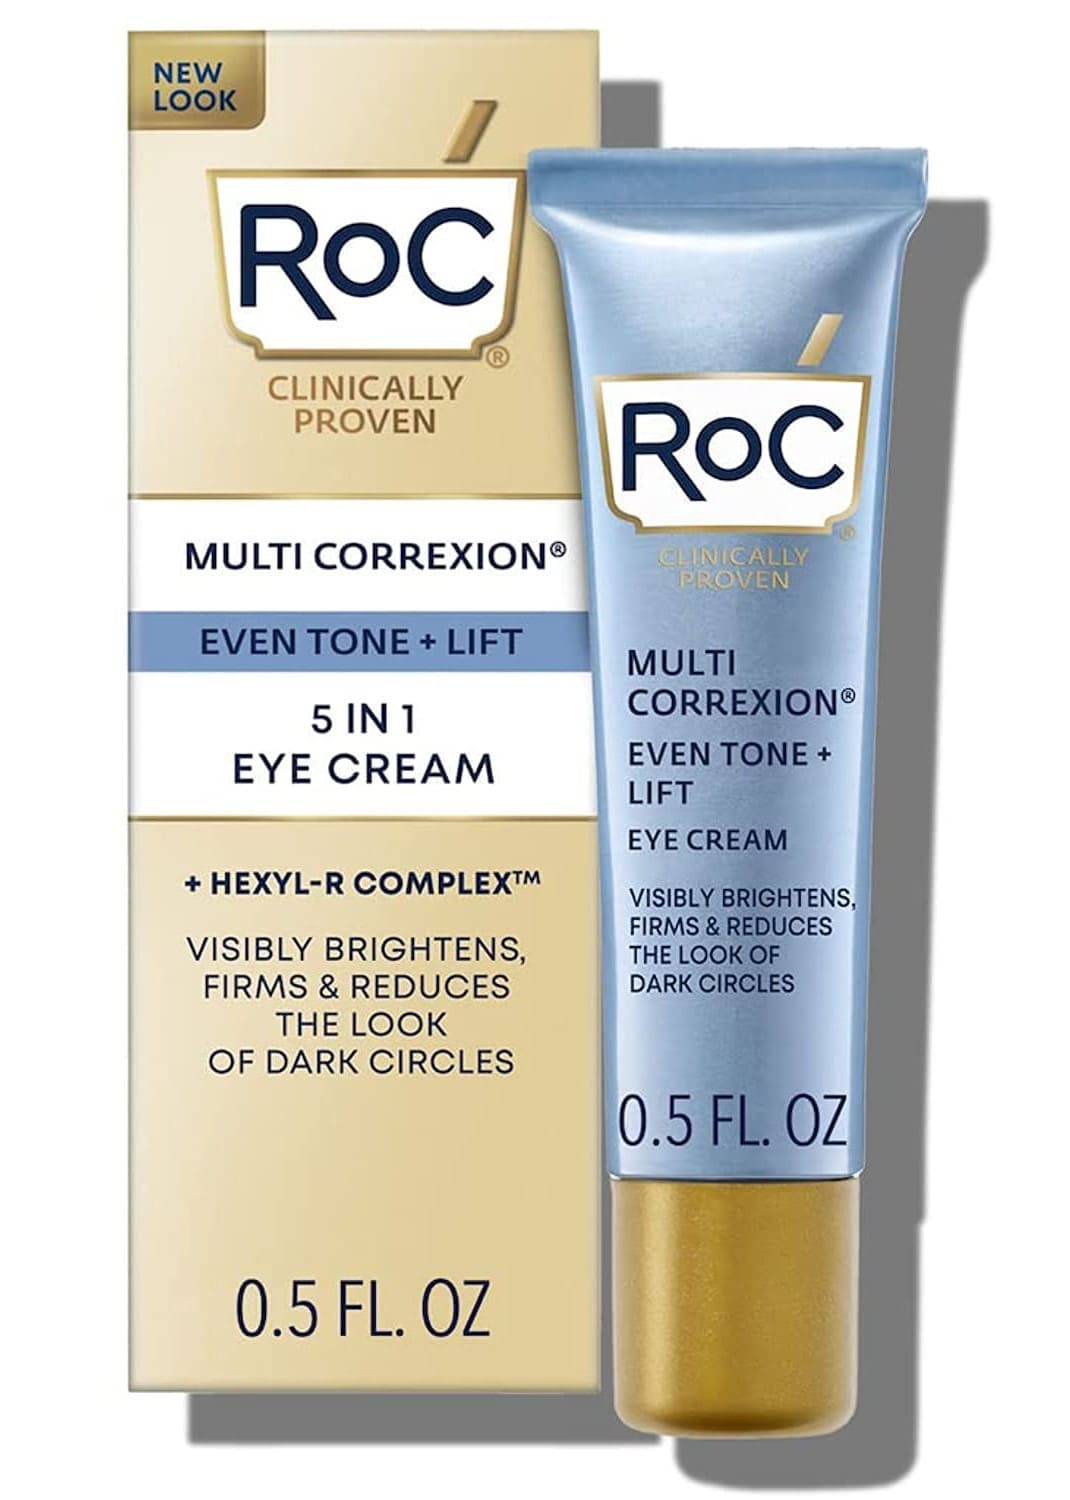 RoC Multi Correxion cream